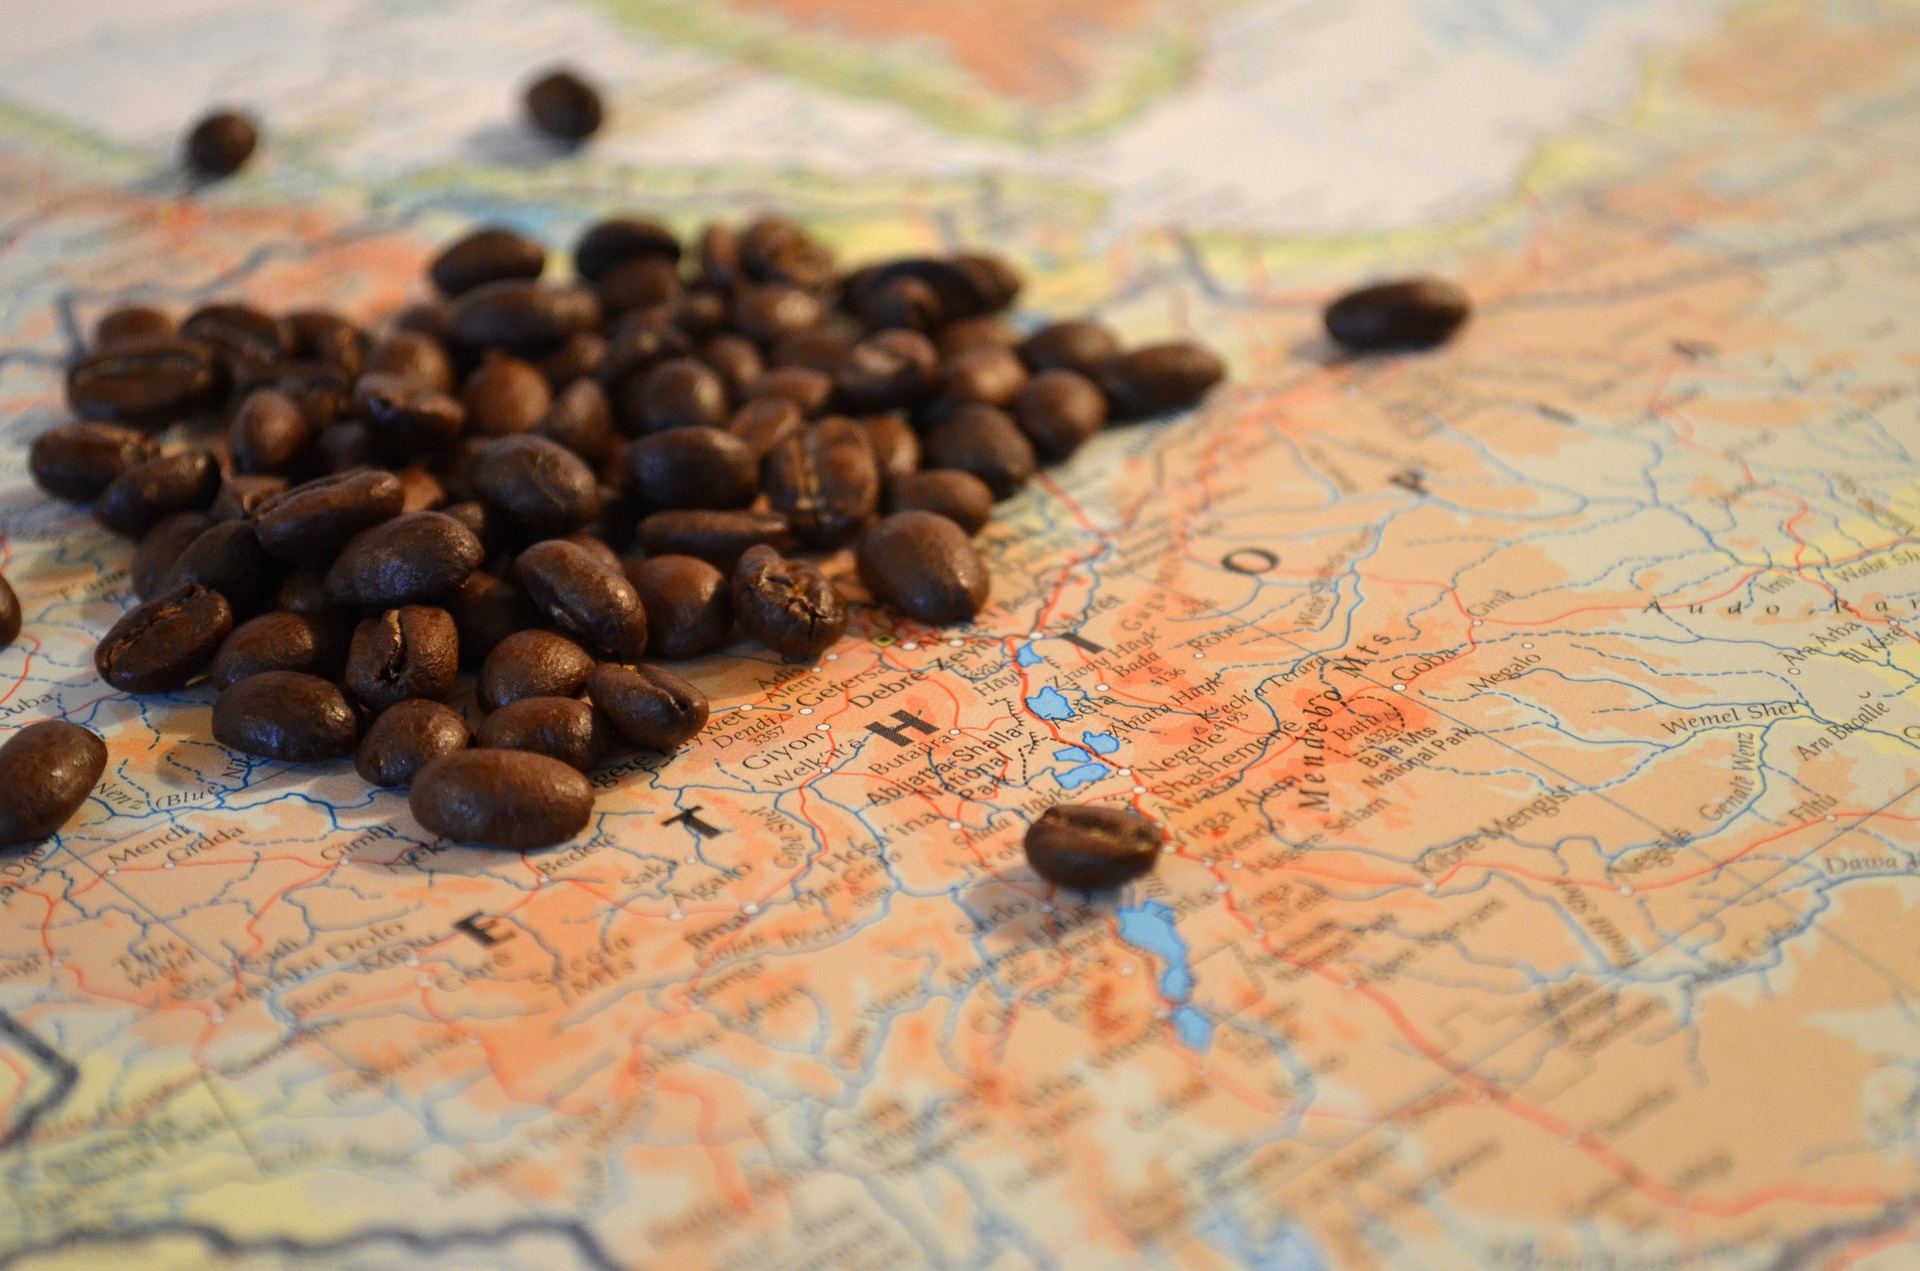 Coffee Ethiopia